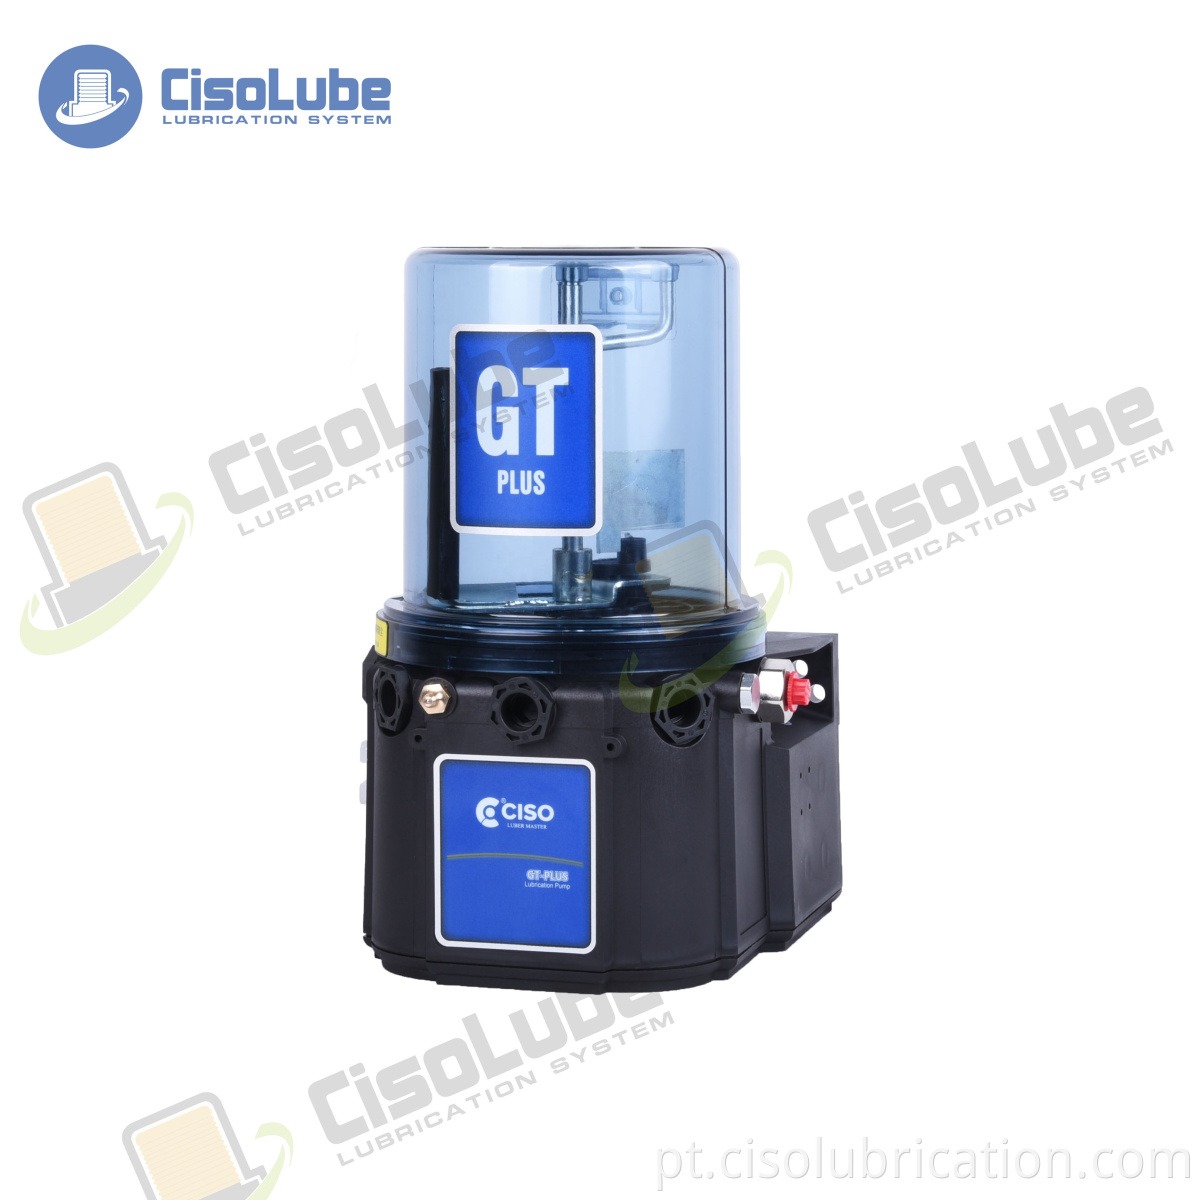 CISO Factory Good Price 24 V / 220 V / 380 V bomba de lubrificação automática da máquina cnc para máquinas